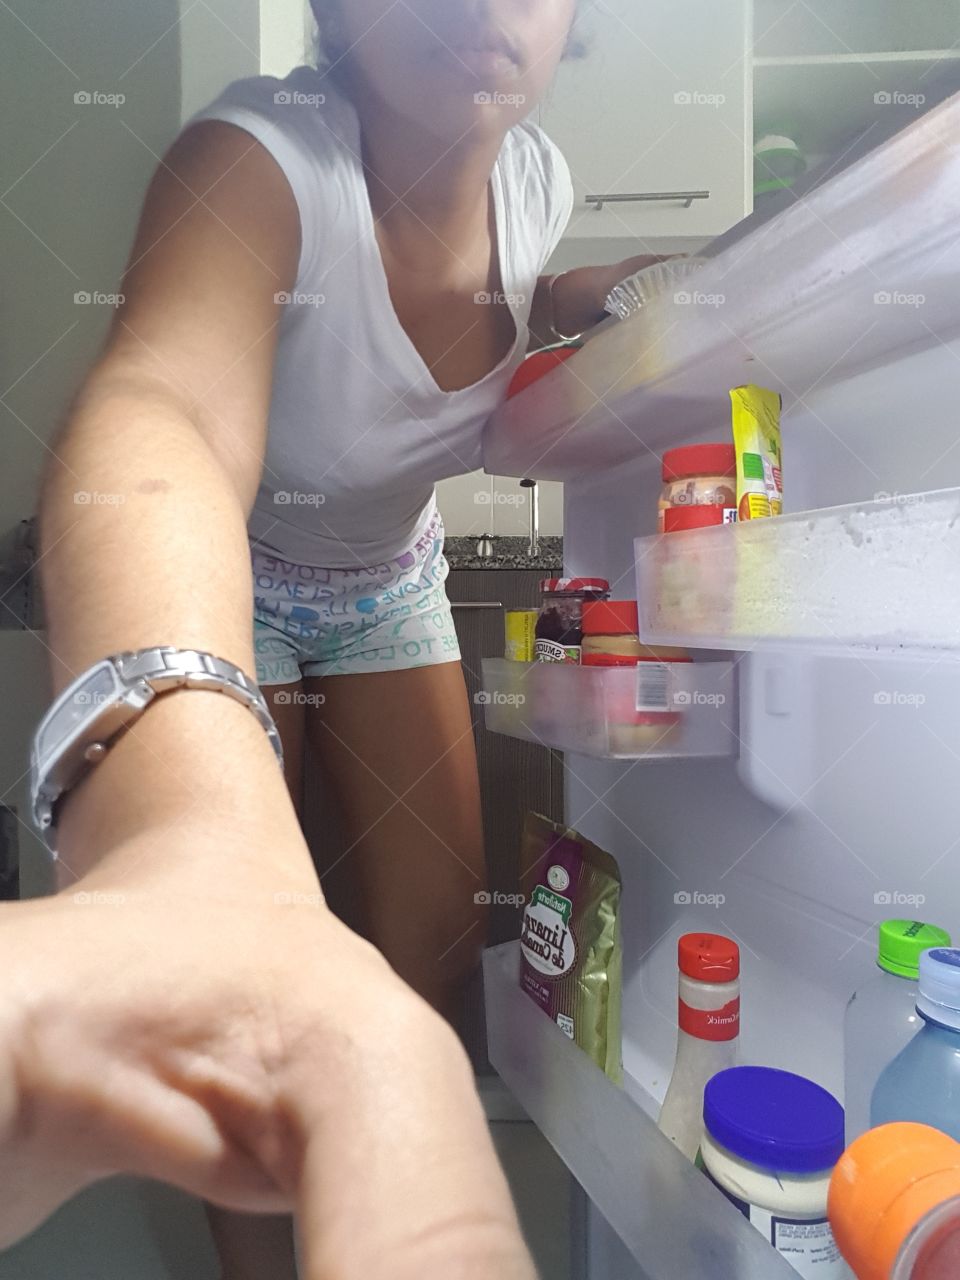 in the fridge